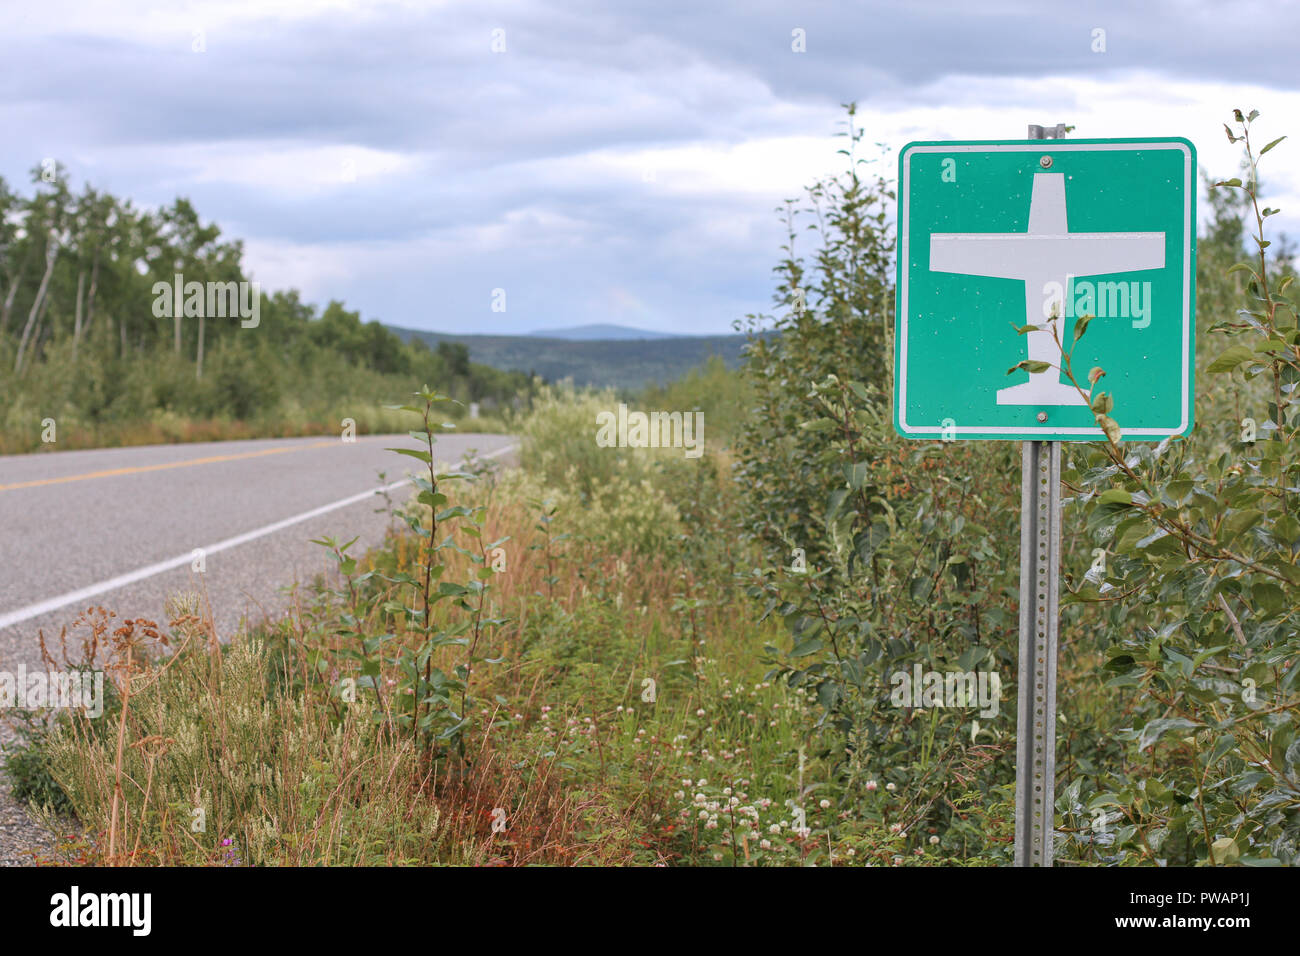 Dalton Highway, Canadá. Vistala señal de carretera que indica que una franja de la autopista, que se puede utilizar un campo de aterrizaje o Runaway. Foto de stock